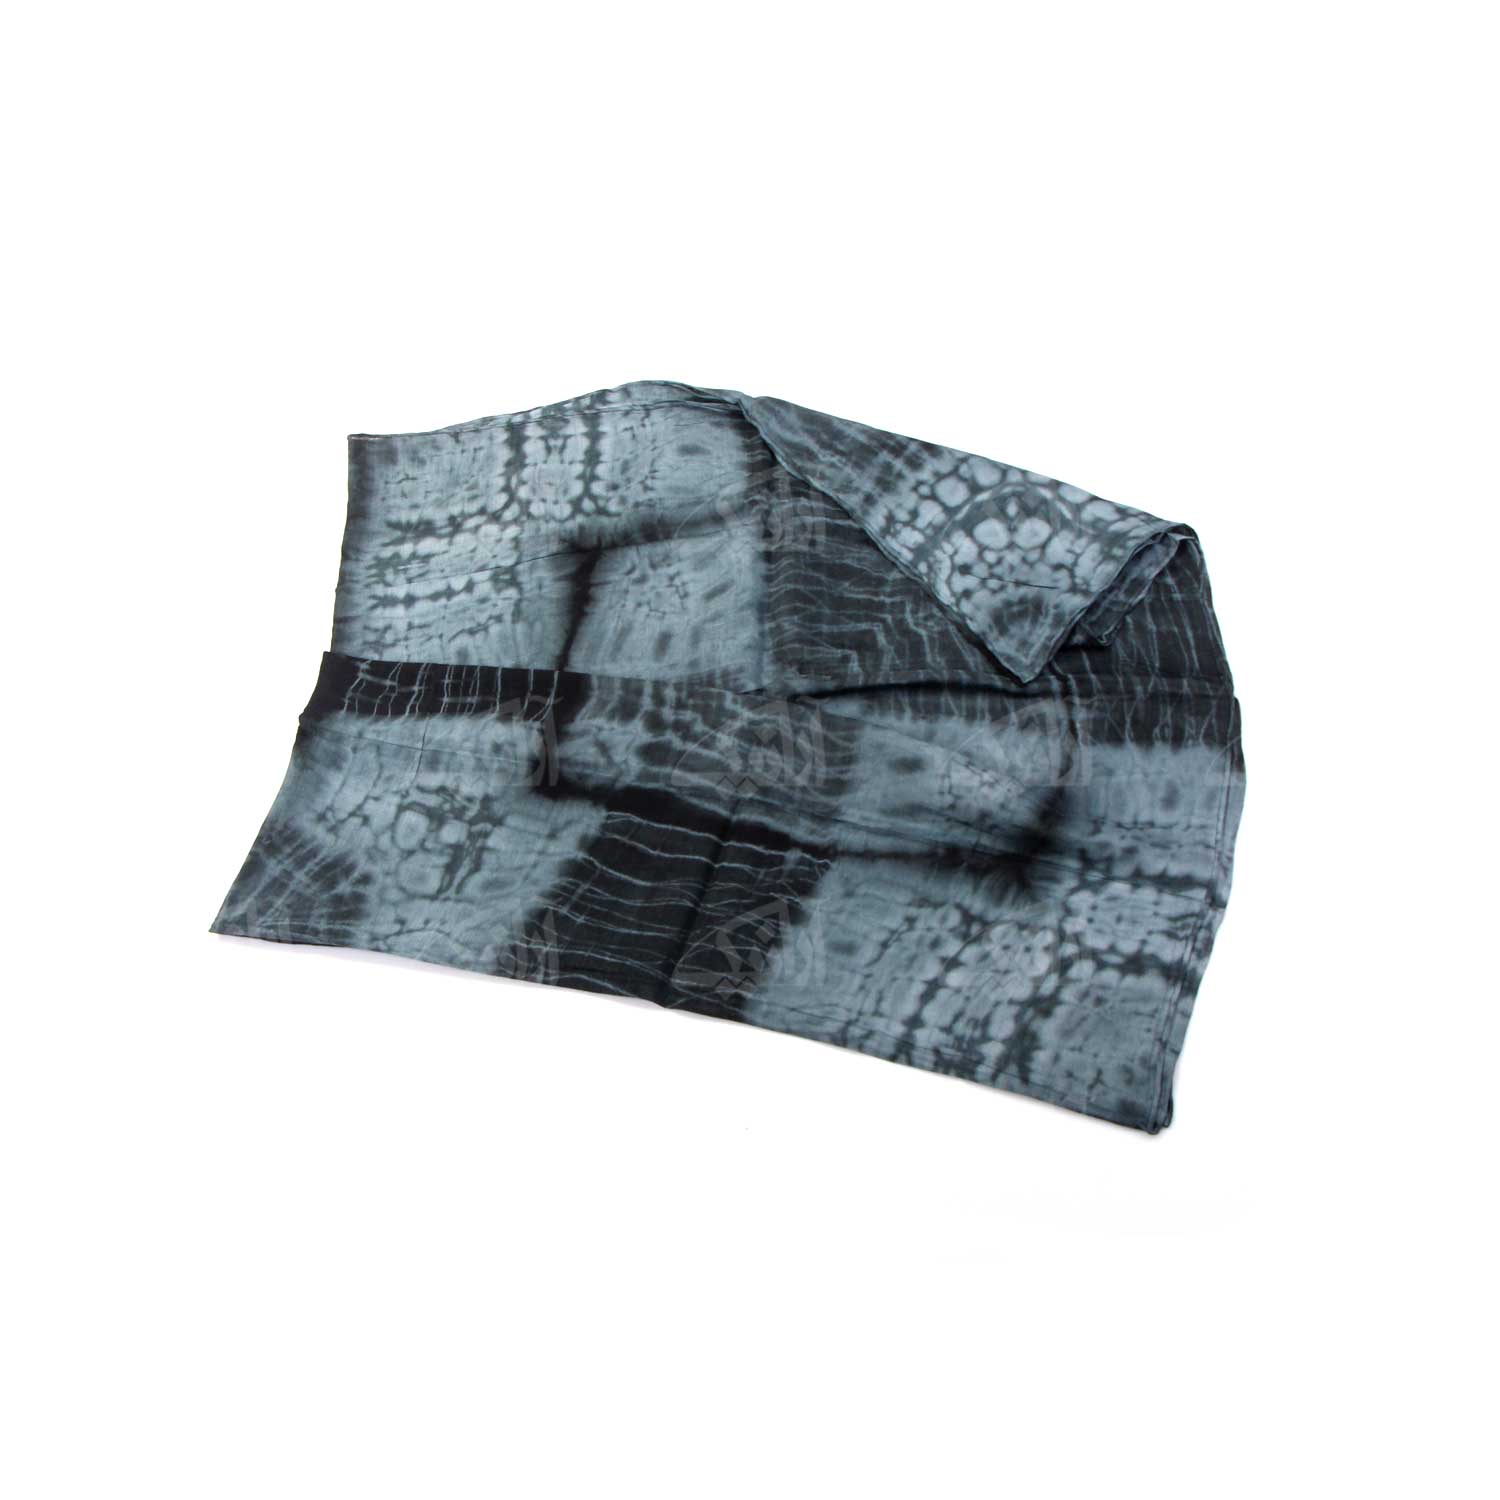 روسری زنانه آرانیک مدل ابریشمی با چاپ باتیک کد 1213100016